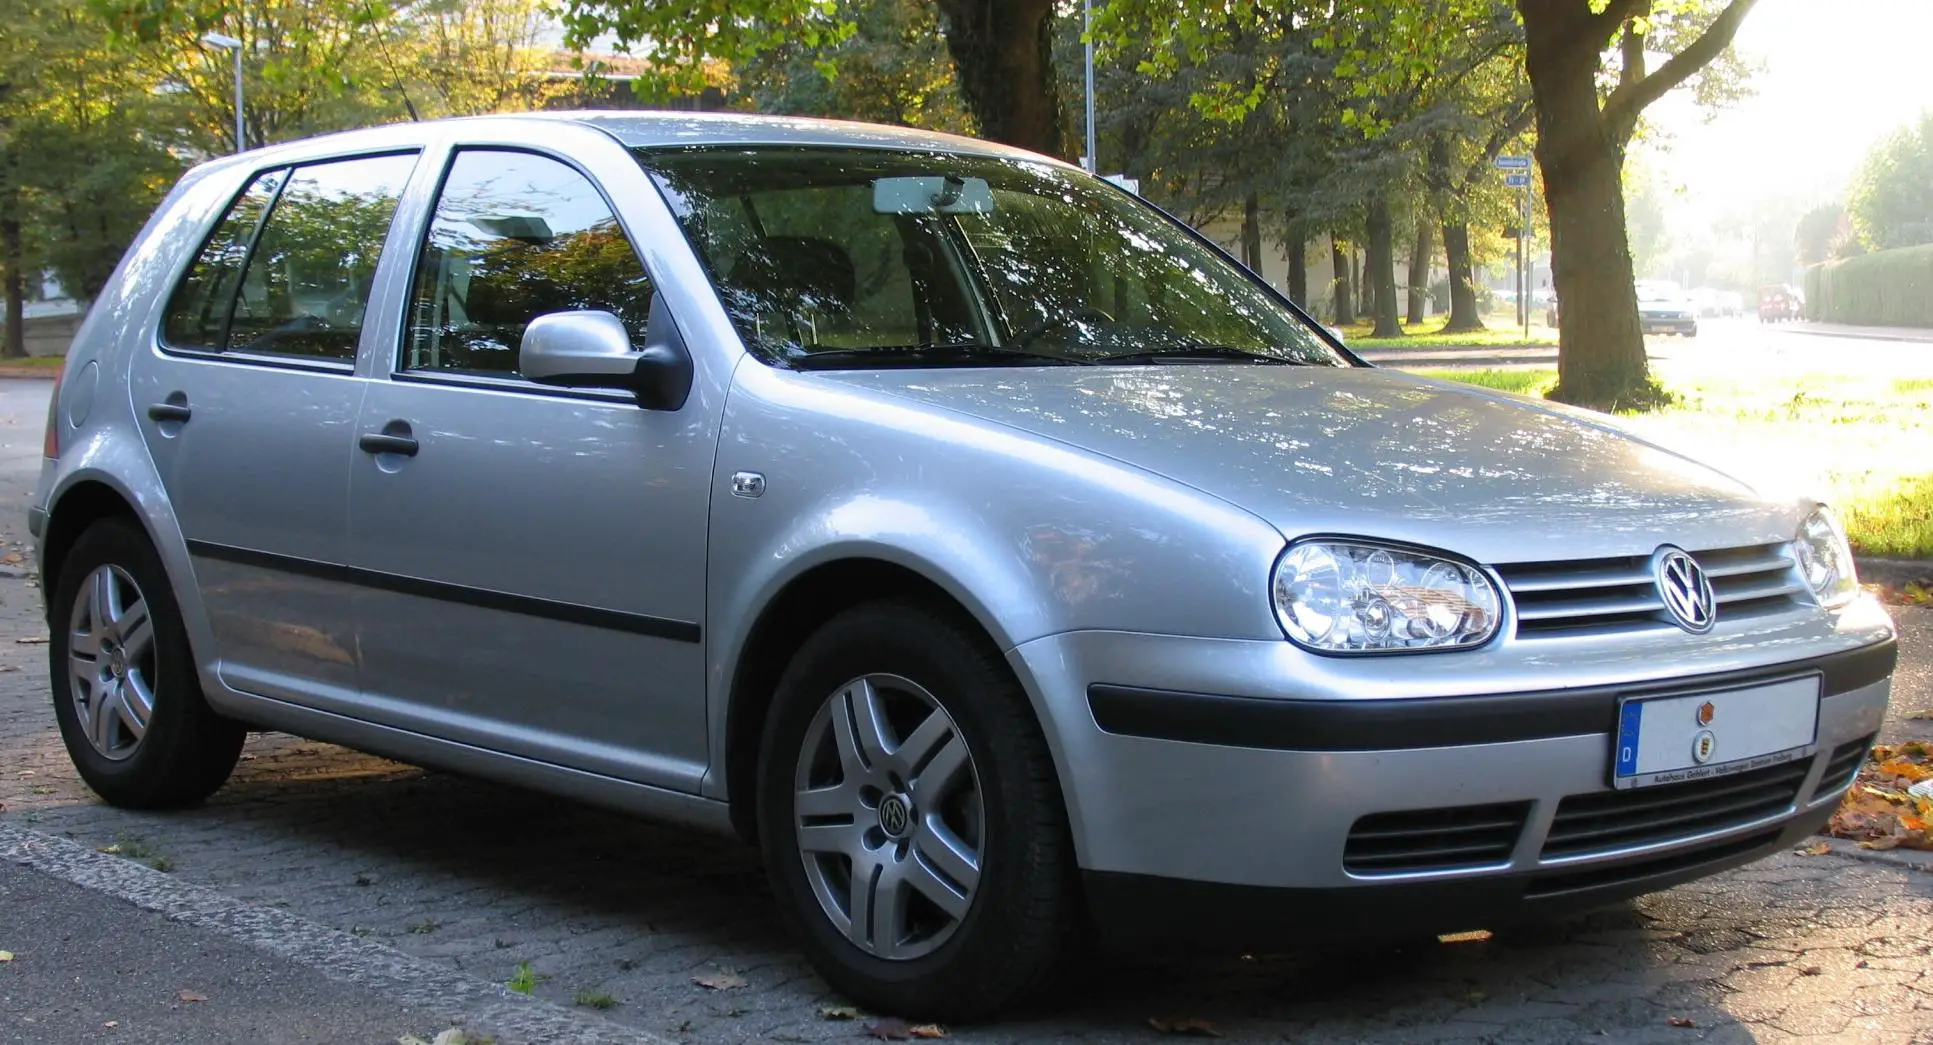 Volkswagen Golf 4 et dysfonctionnement moteur : comment agir ?